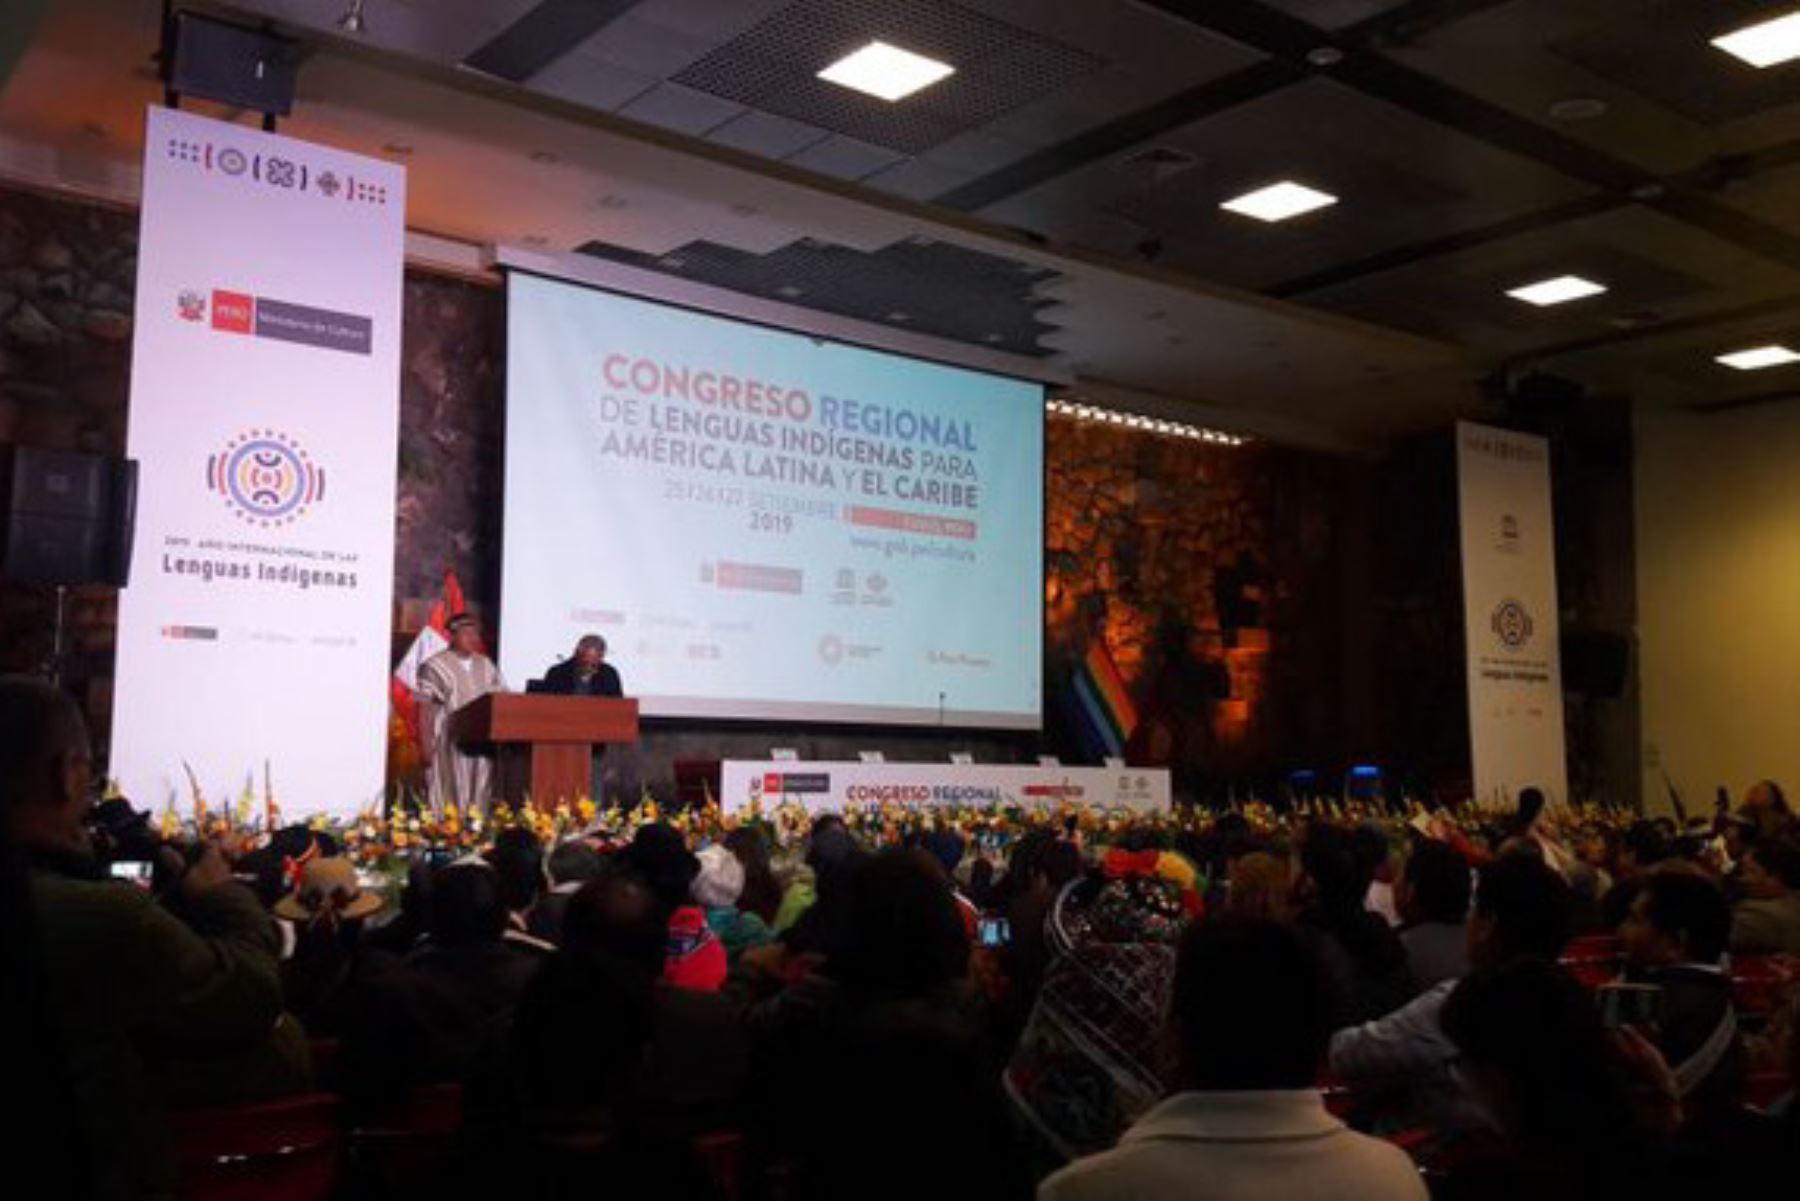 América Latina y El Caribe acuerdan actuar frente a posible pérdida de lenguas indígenas, es una de las conclusiones del Congreso Regional de Lenguas Indígenas para América Latina y el Caribe, realizado en la ciudad de Cusco.